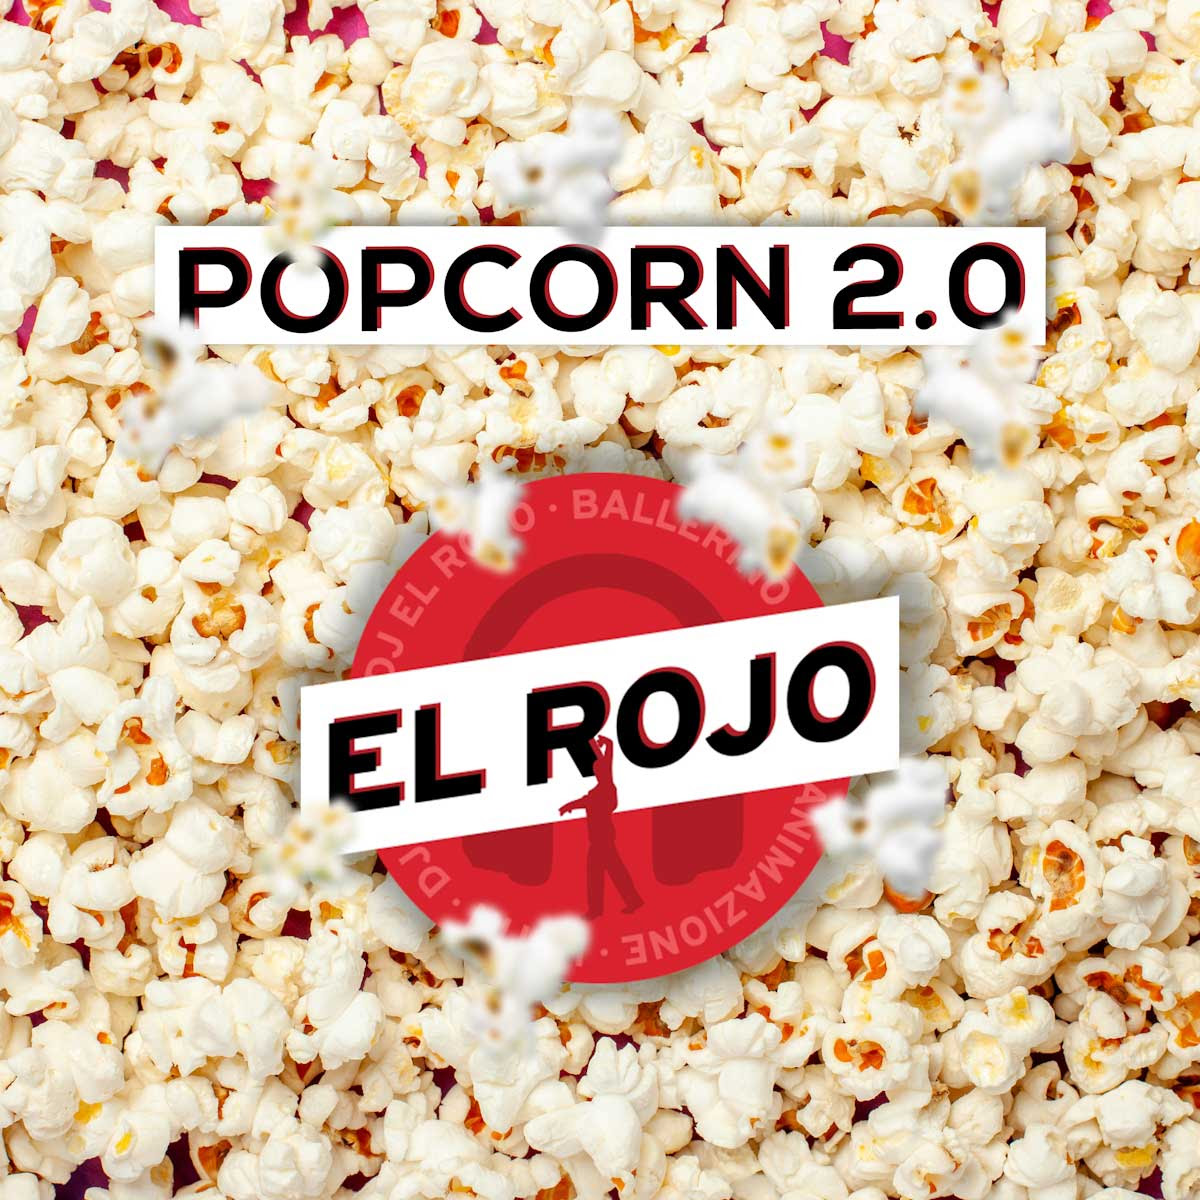 EL ROJO: venerdì 29 dicembre esce in radio “POPCORN 2.0” il singolo d’esordio